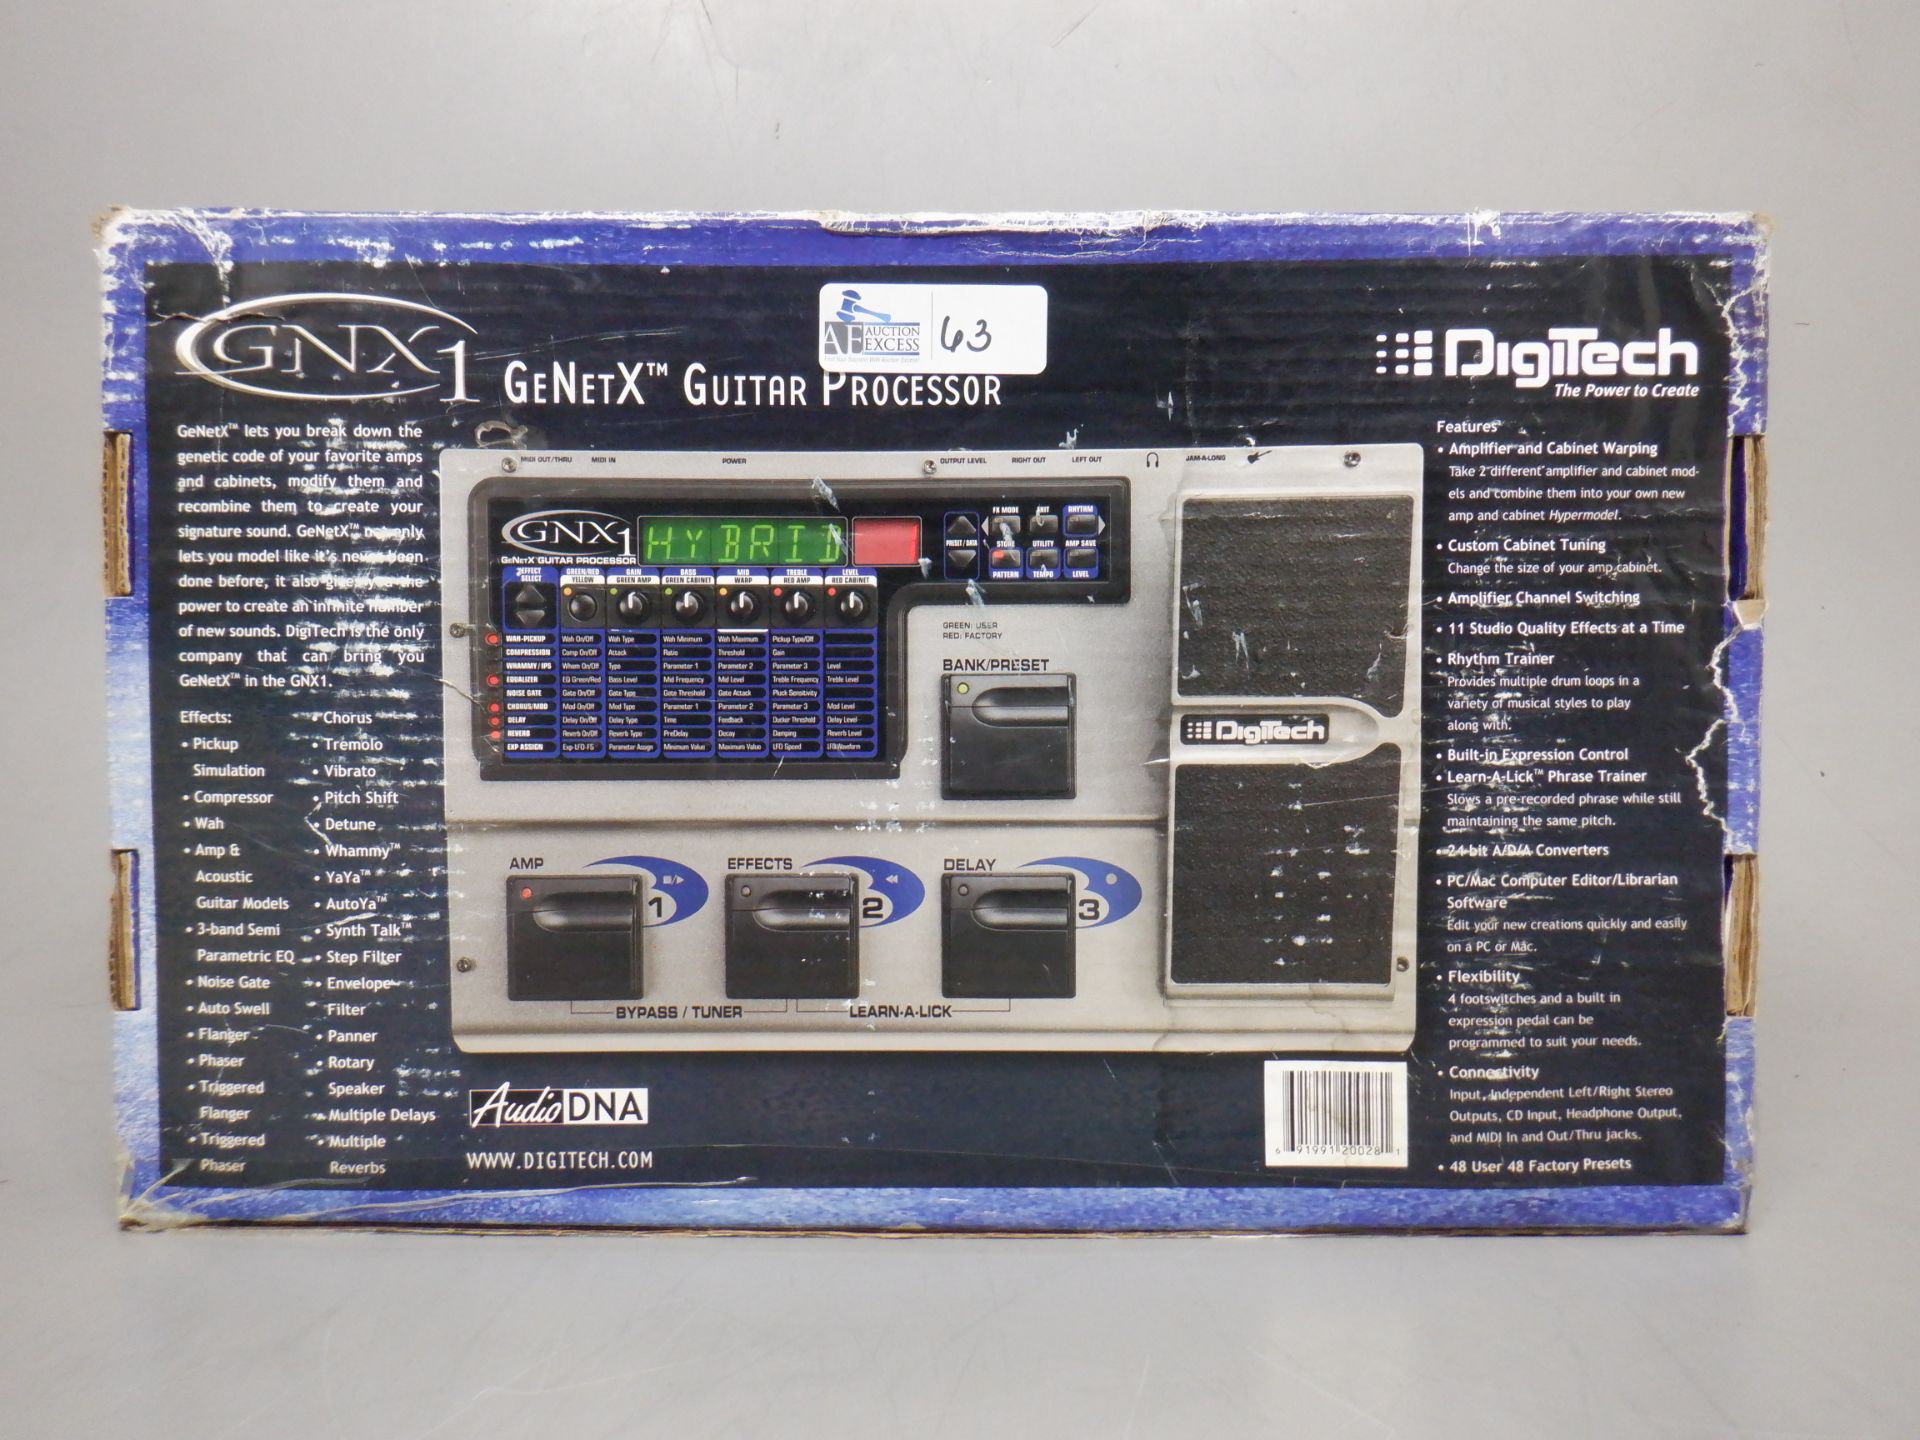 DIGITECH GNX1 GE NET X GUITAR PROCESSOR IN ORIGINAL BOX